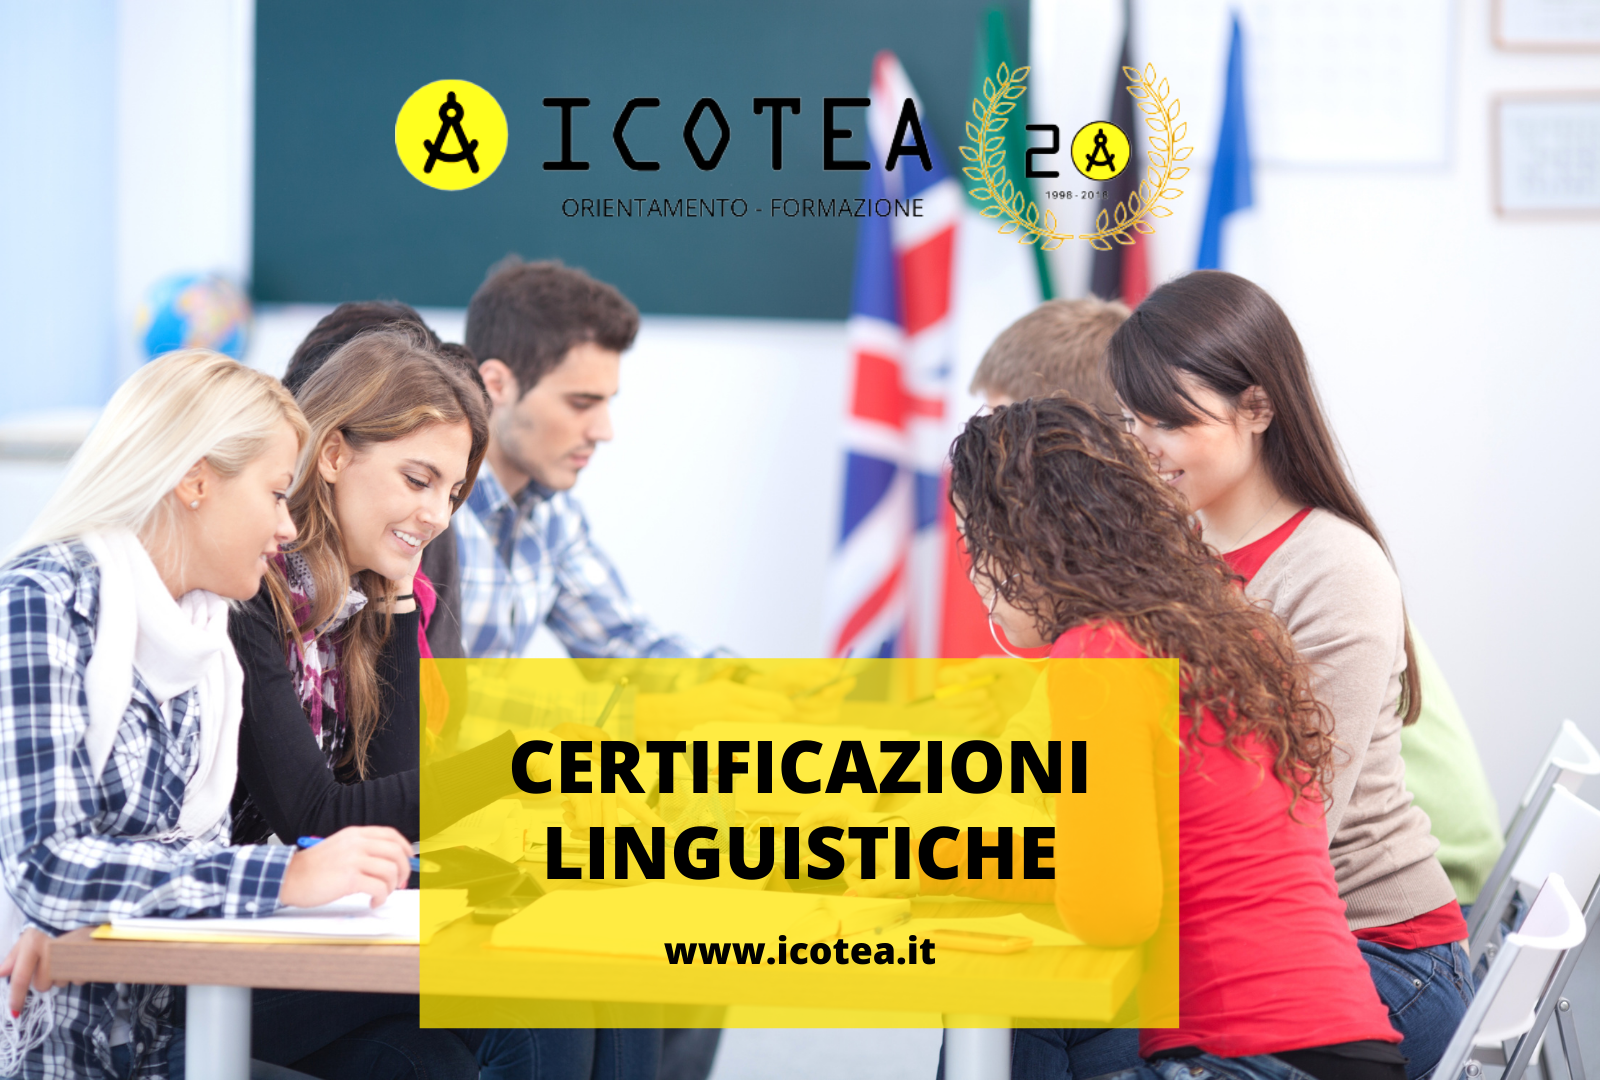 certificazioni linguistiche